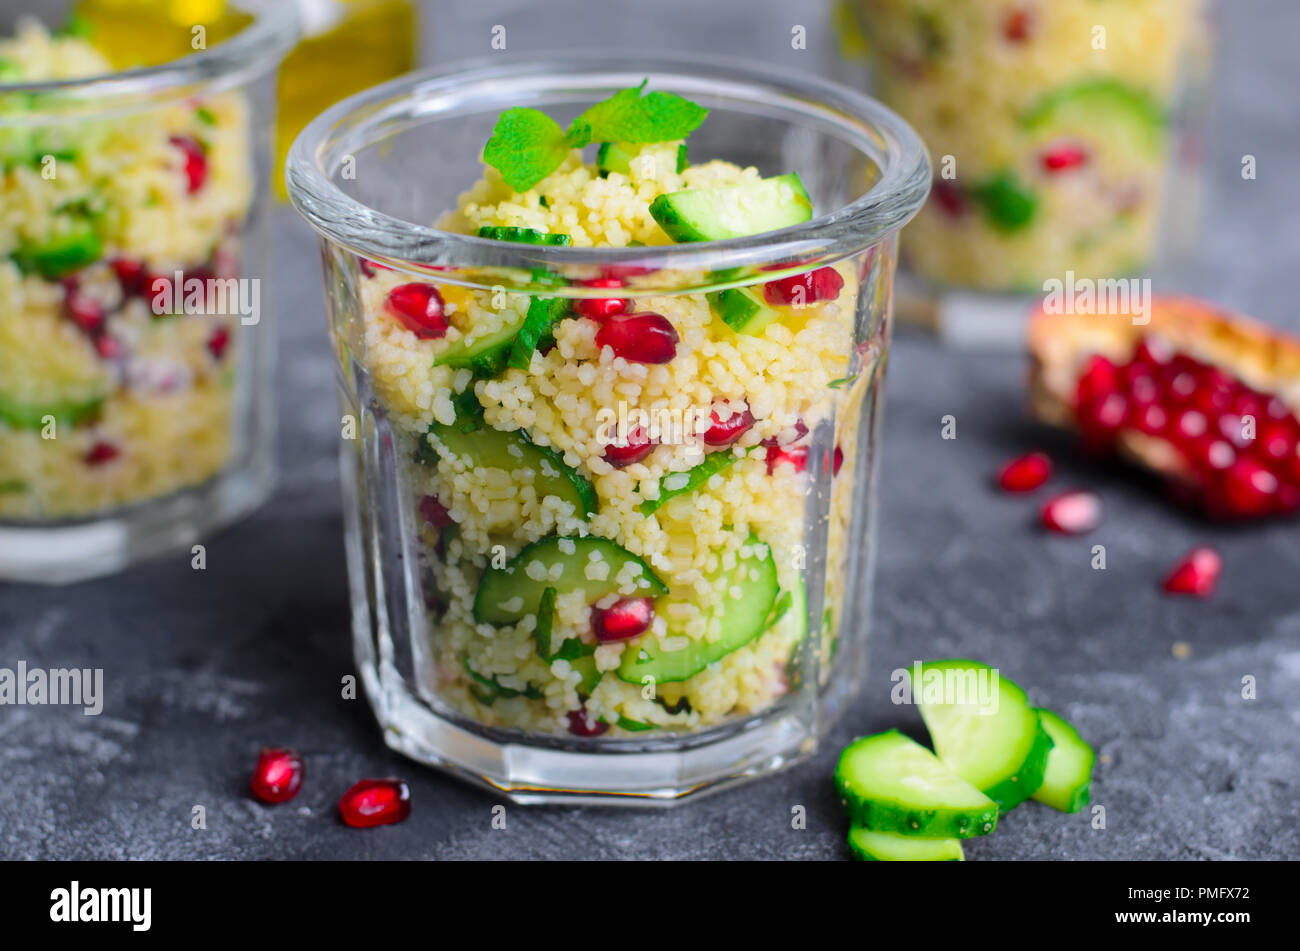 Couscous Salat in einem Glas mit Granatapfel, Minze und Gurken, gesunde  Hausmannskost, vegane Mahlzeit Stockfotografie - Alamy